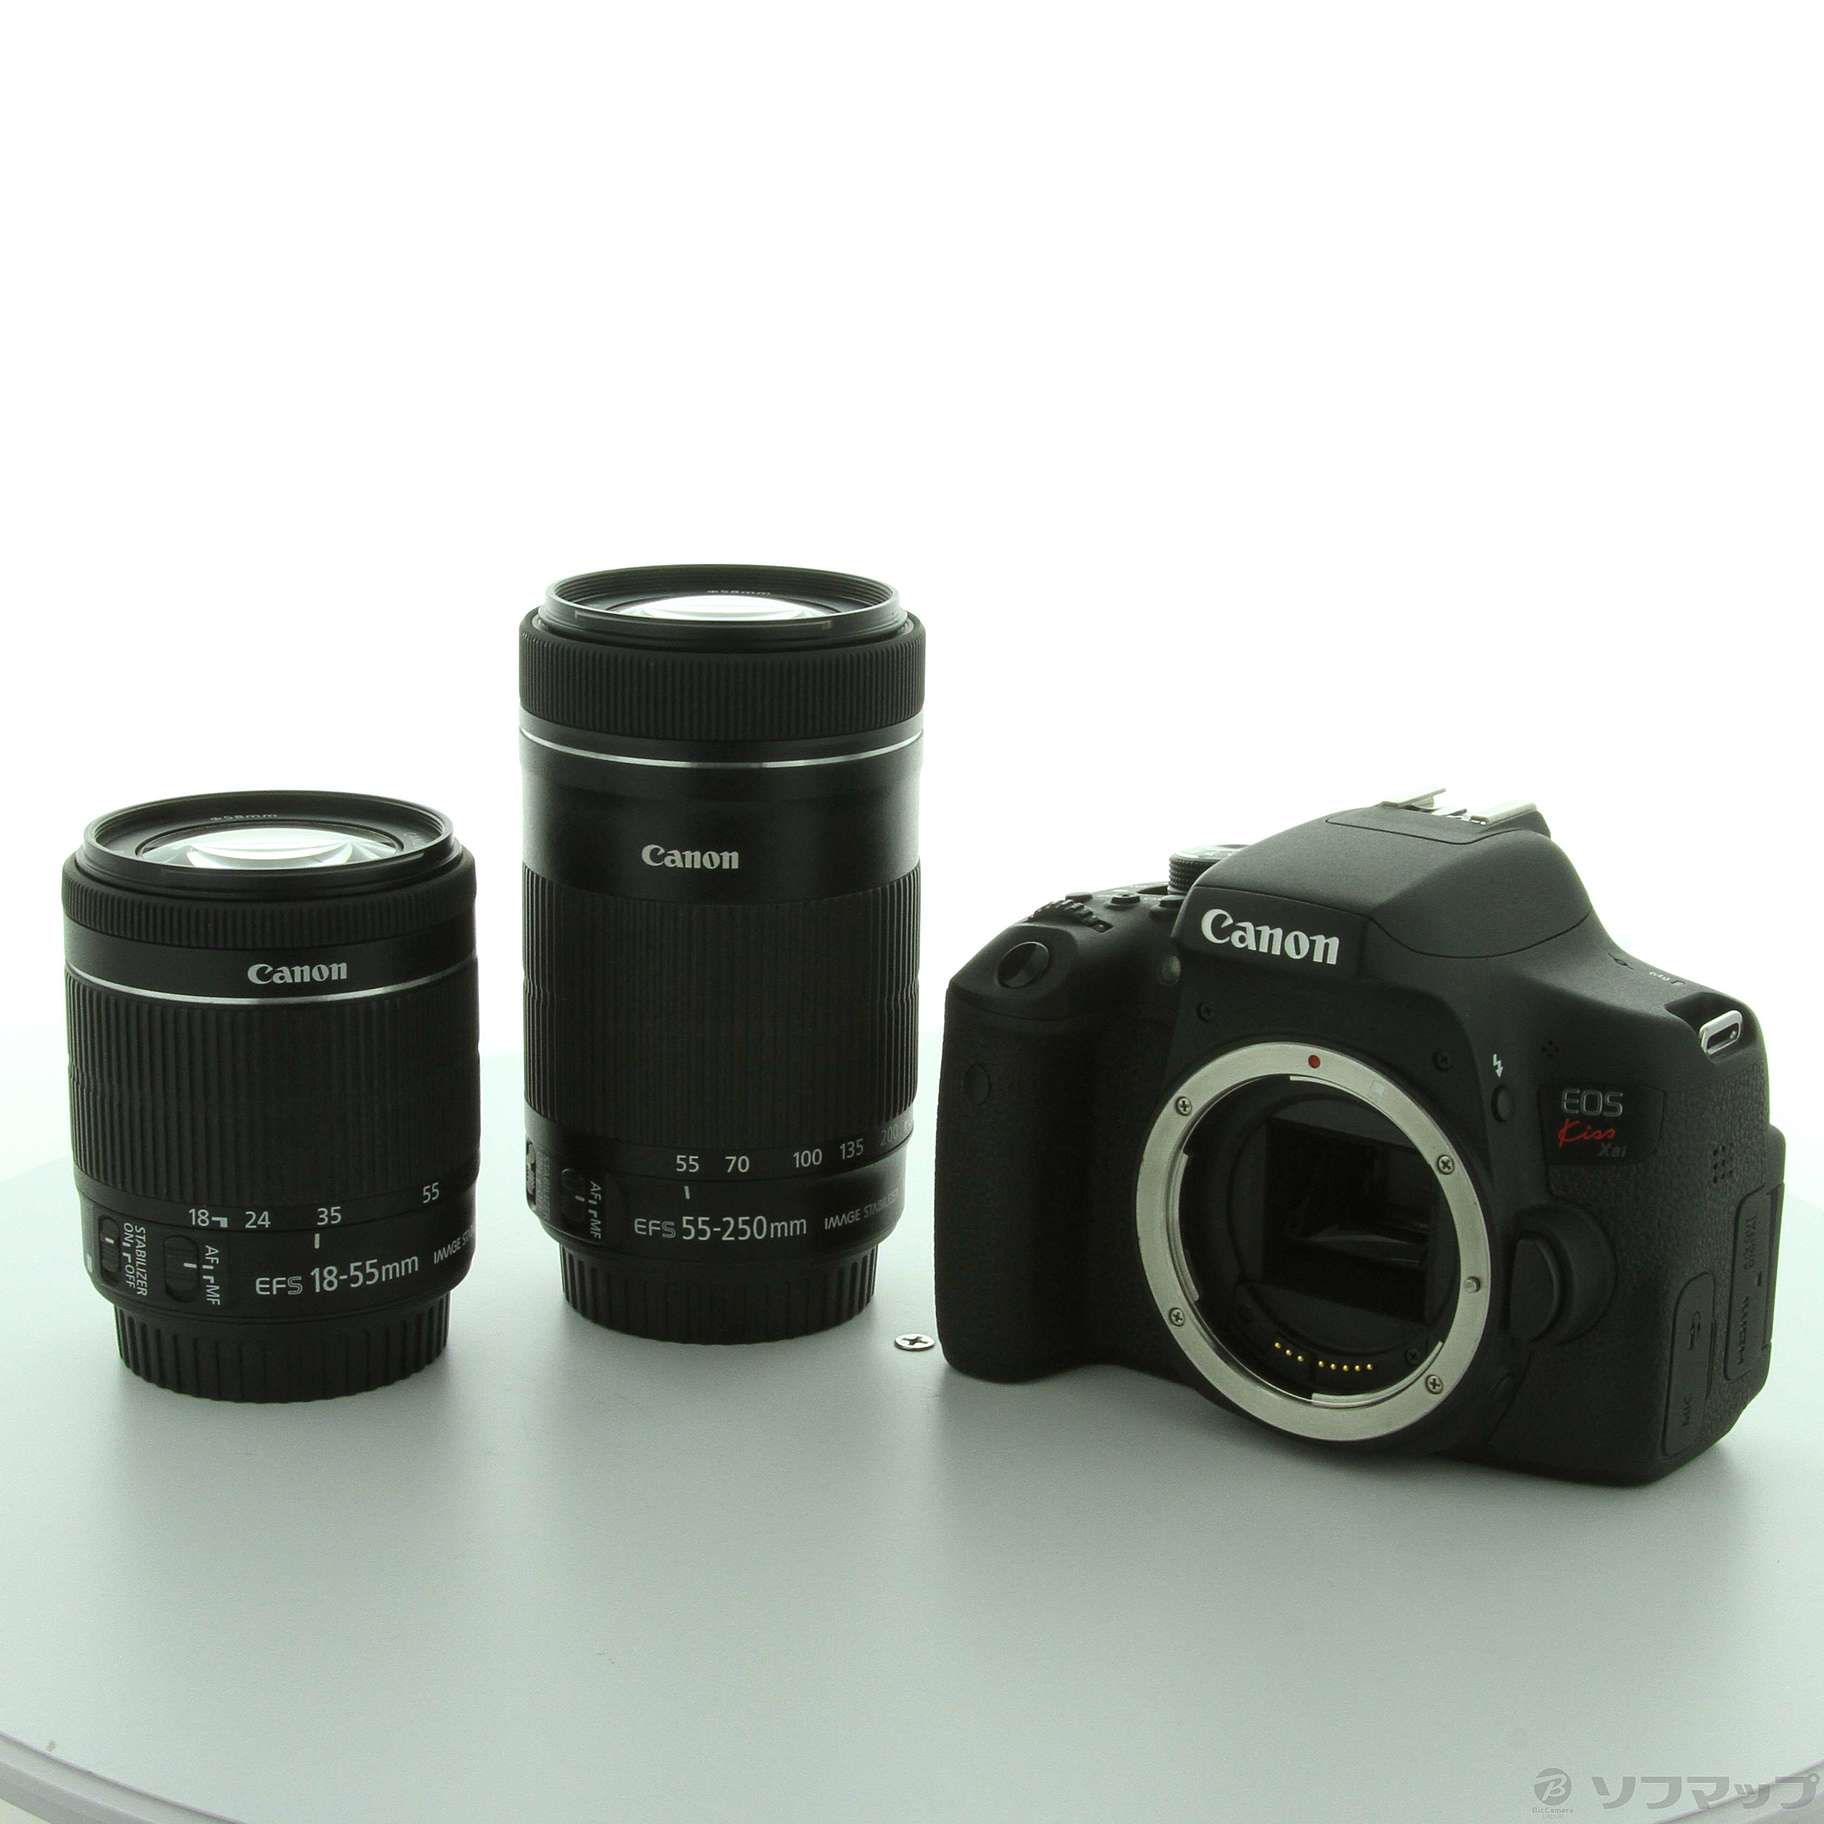 CanonCanon EOS KISS X8i EOS KISS X8I - デジタルカメラ